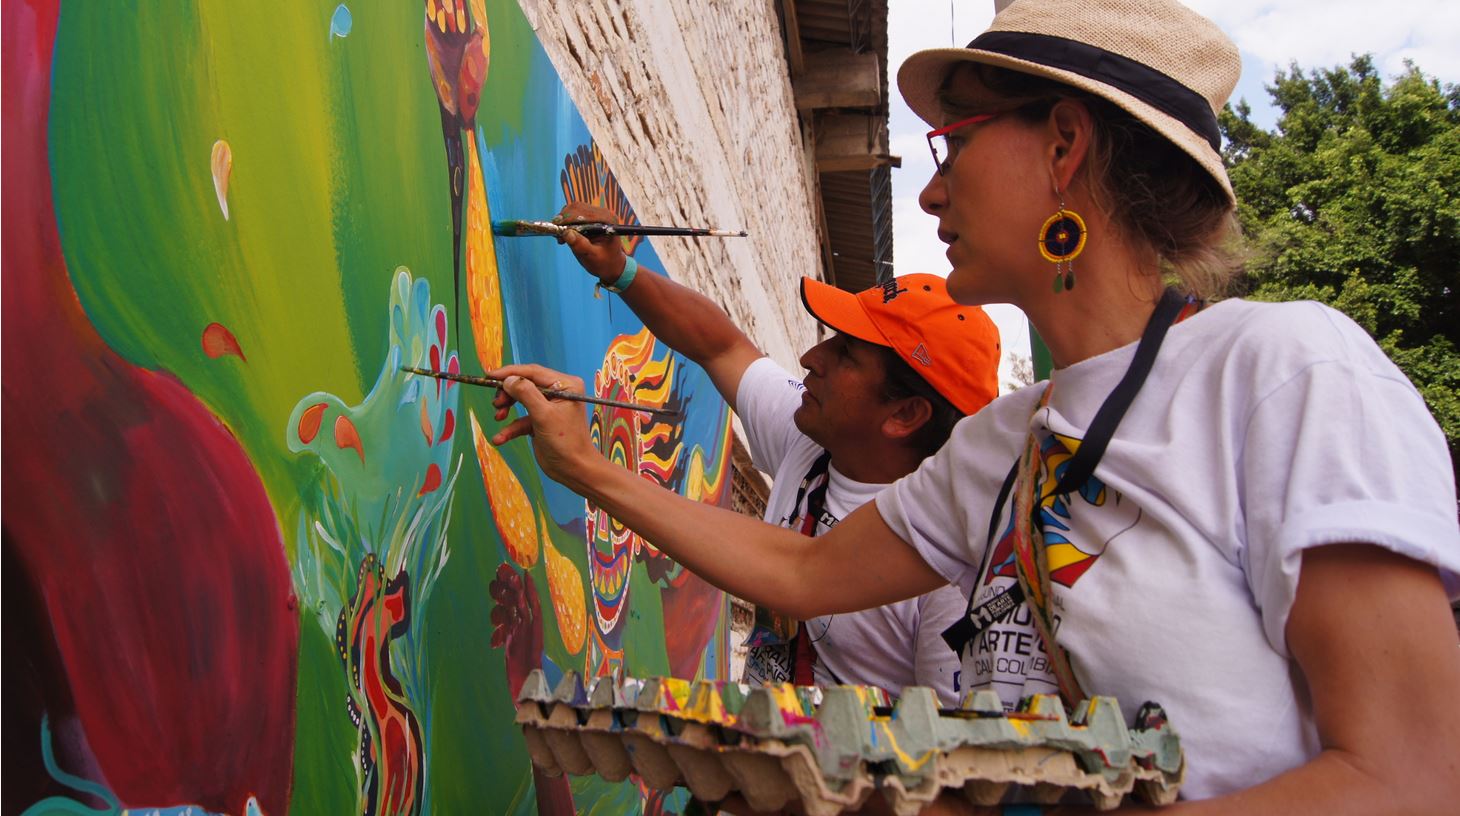 La théologienne Anne Stickel et l'artiste et philosophe  Warner Benitez Daviz  dirigent depuis septembre 2013 le projet de 'mur communautaire' au Centre Mgr Léonidas Proano, à Quito. (photo DR)